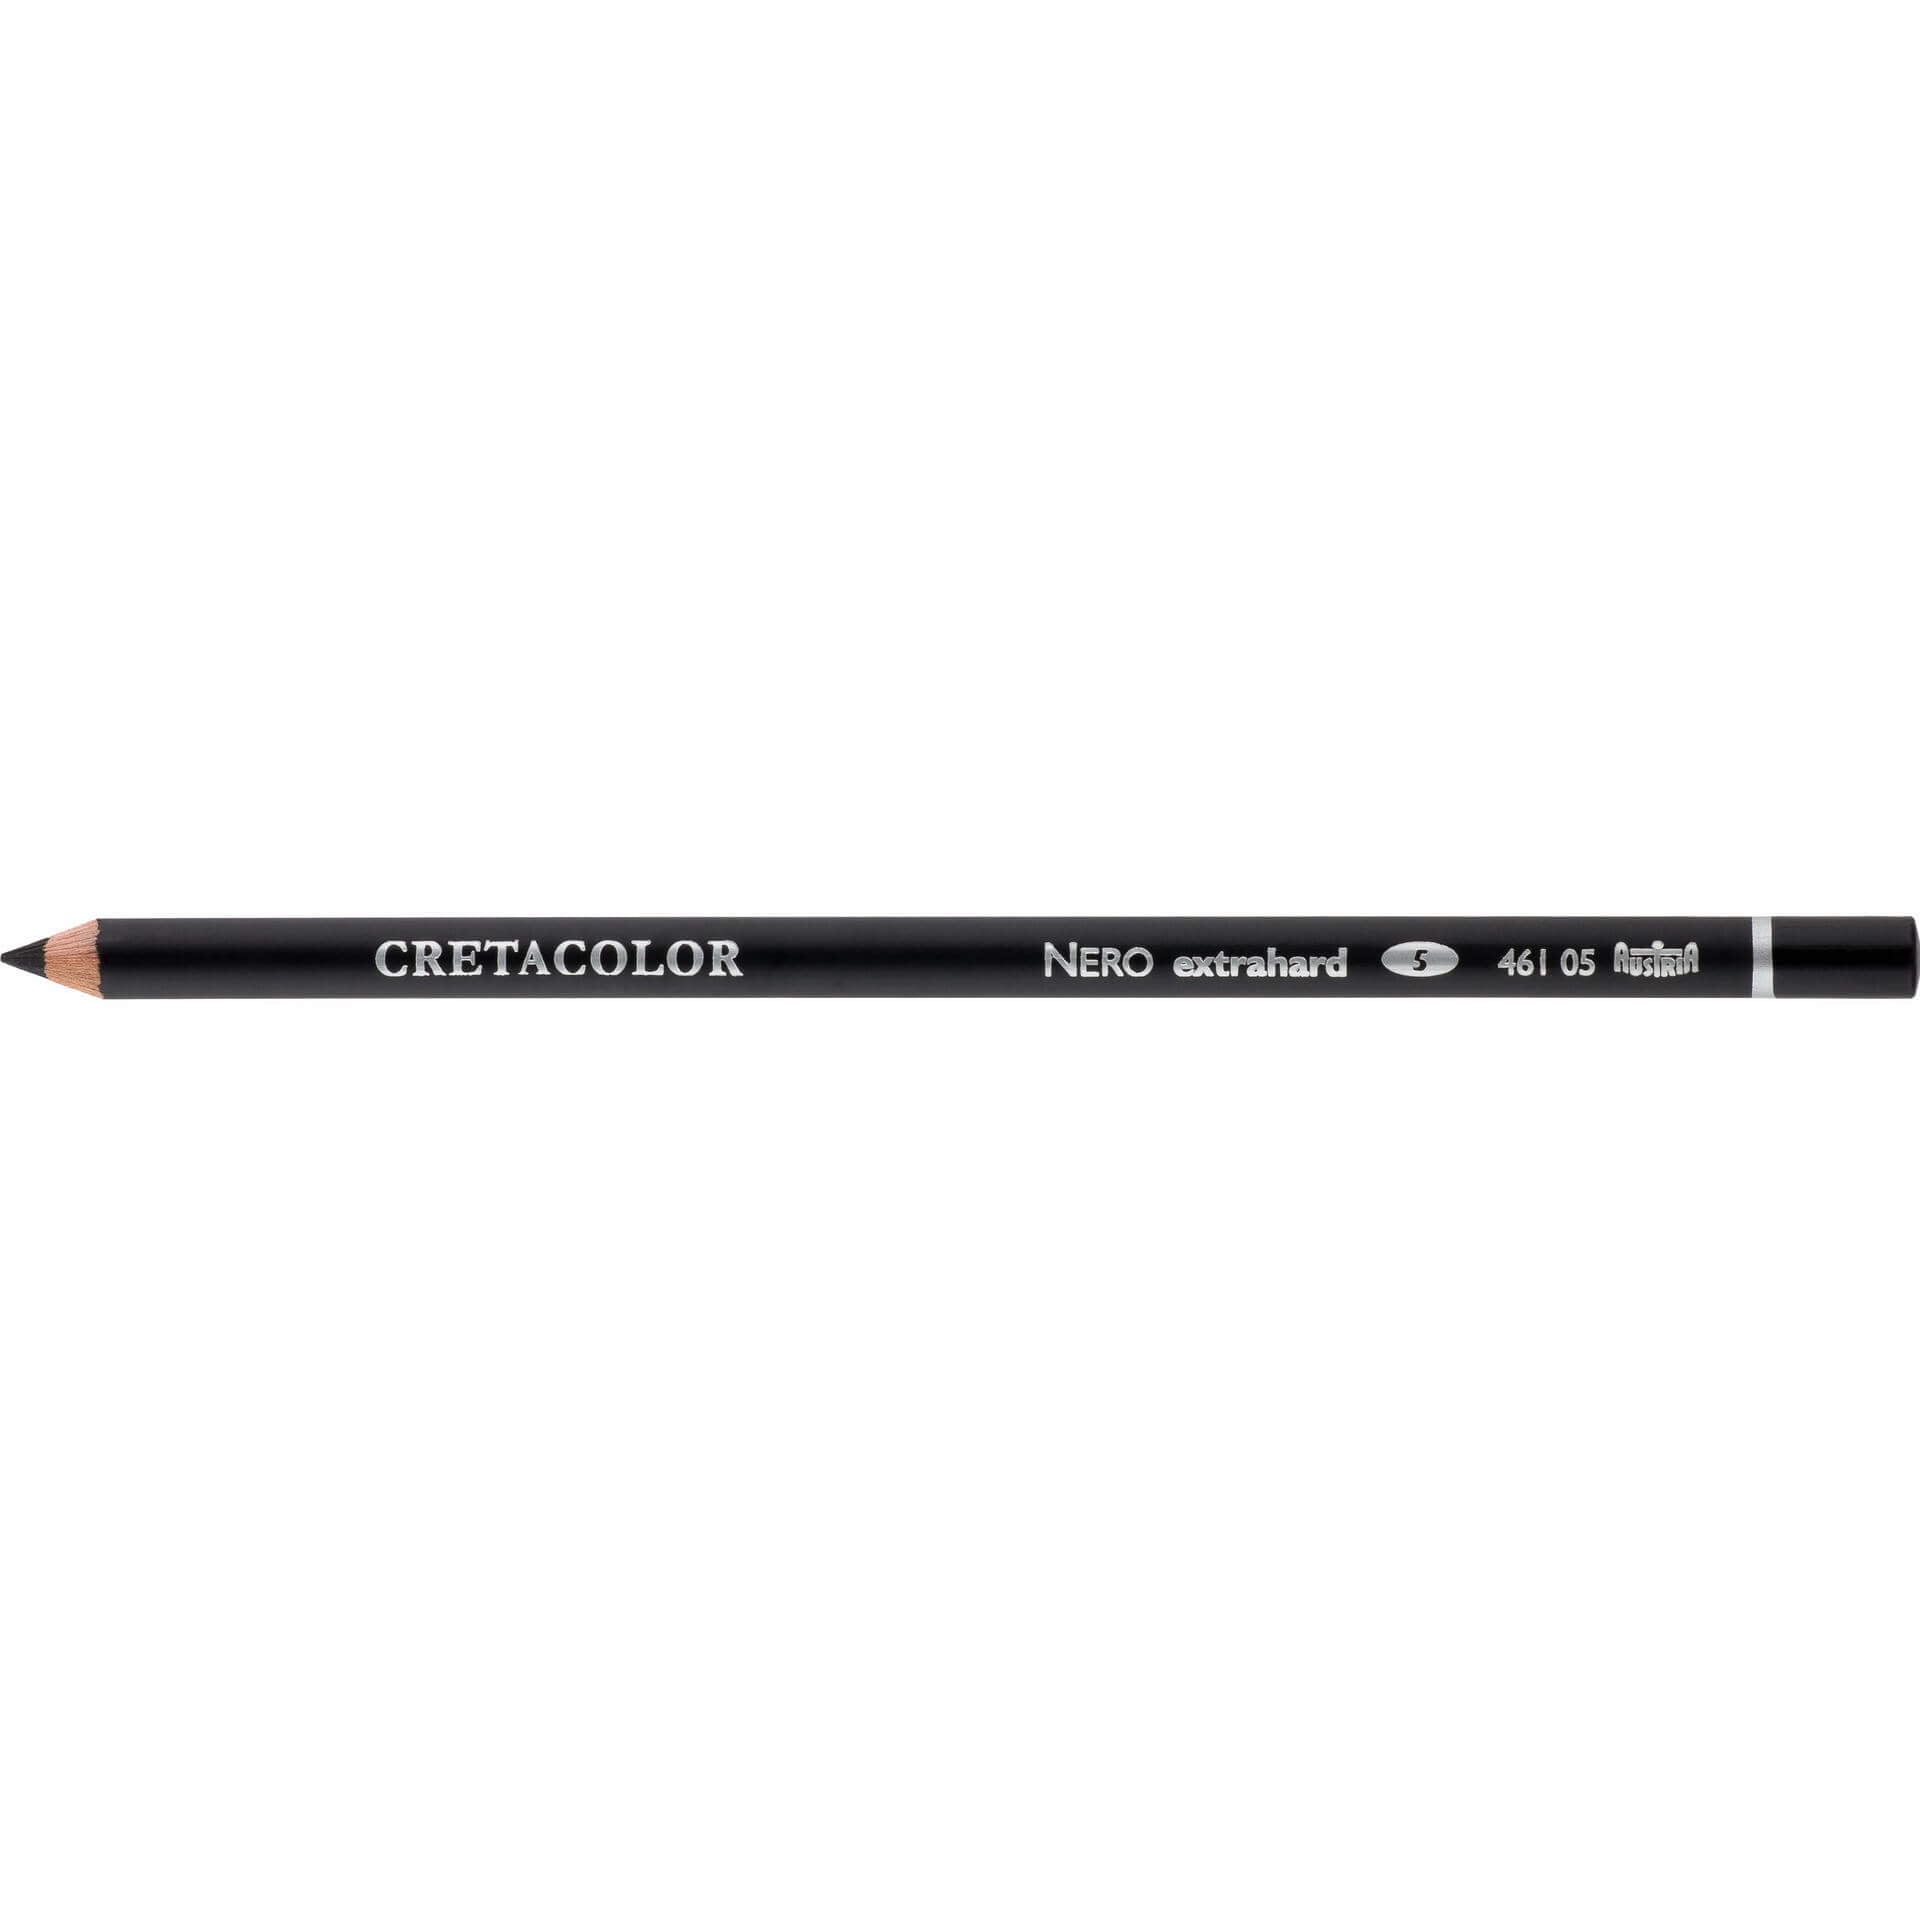 Cretacolor Nero Oil based Pencil Extra Hard